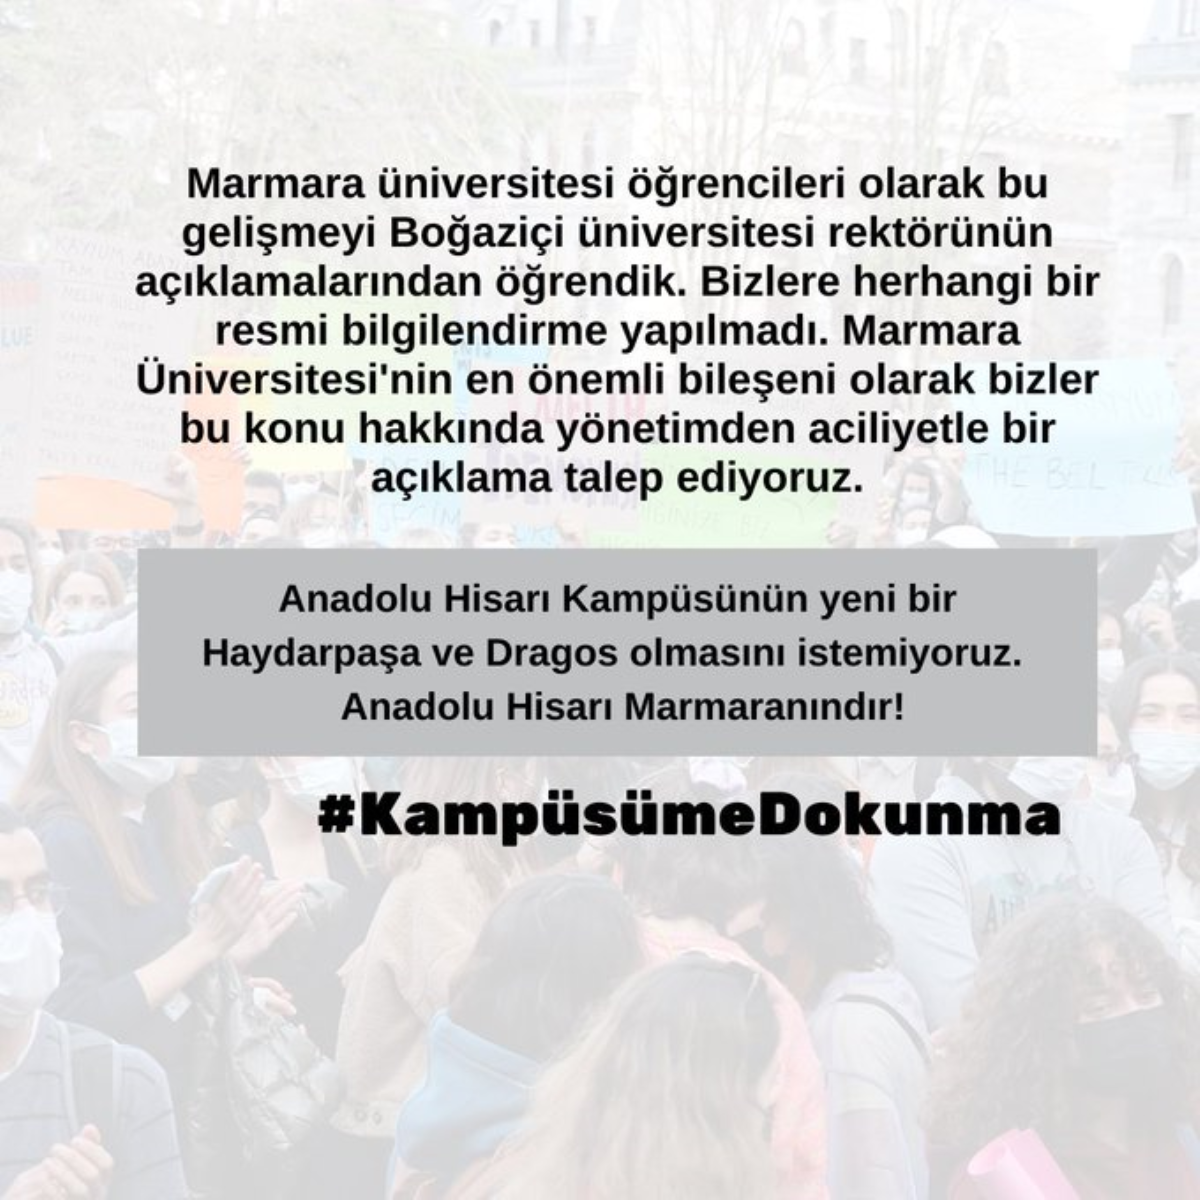 Öğrenciler Marmara ve Boğaziçi rektörlerinin aldığı karara itiraz